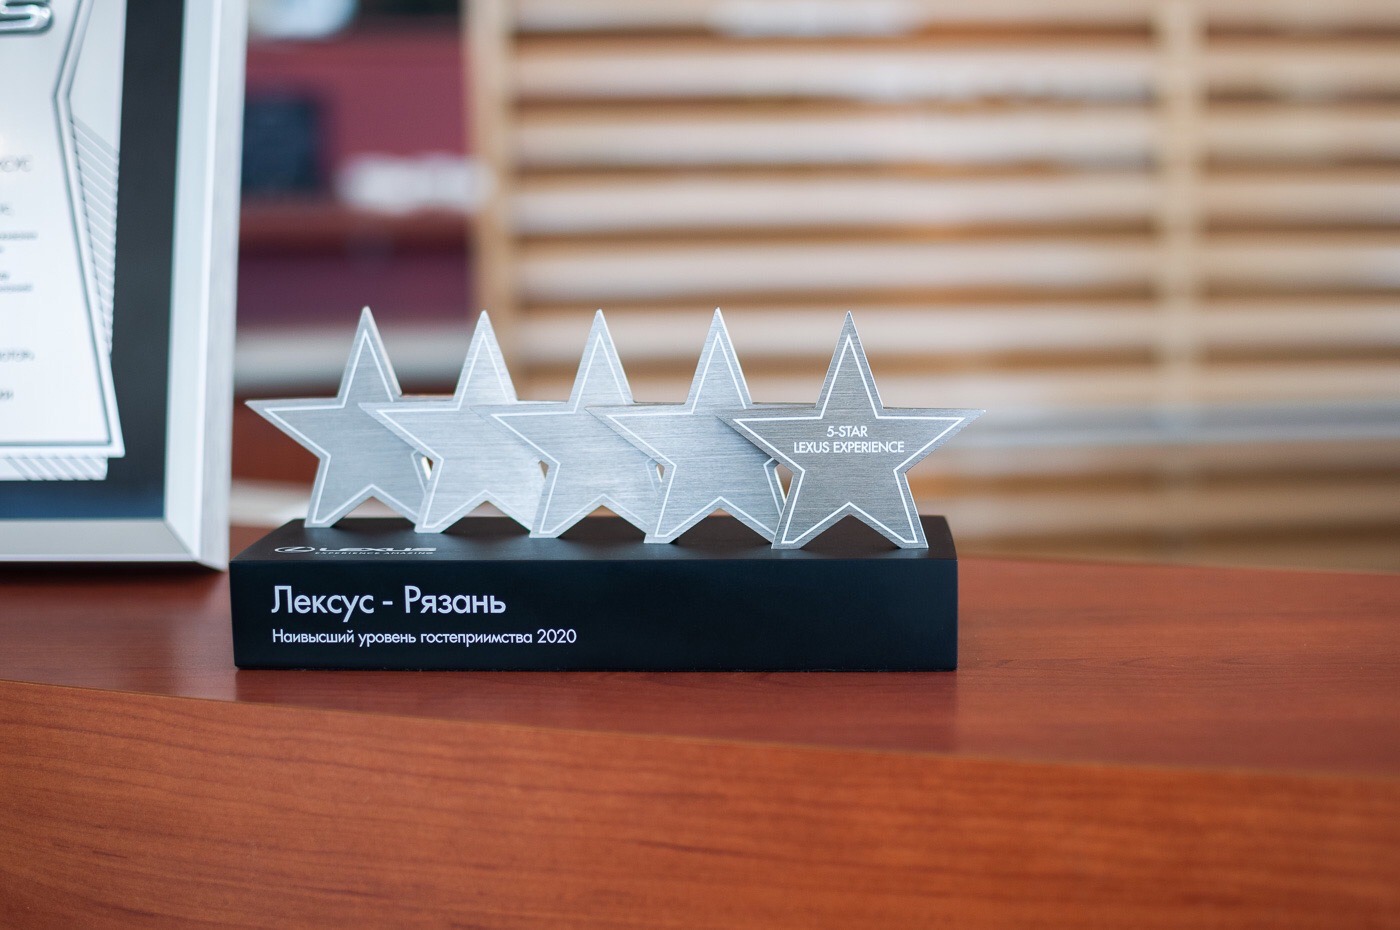 Дилерский центр Лексус-Рязань стал обладателем премии «Наивысший уровень гостеприимства»